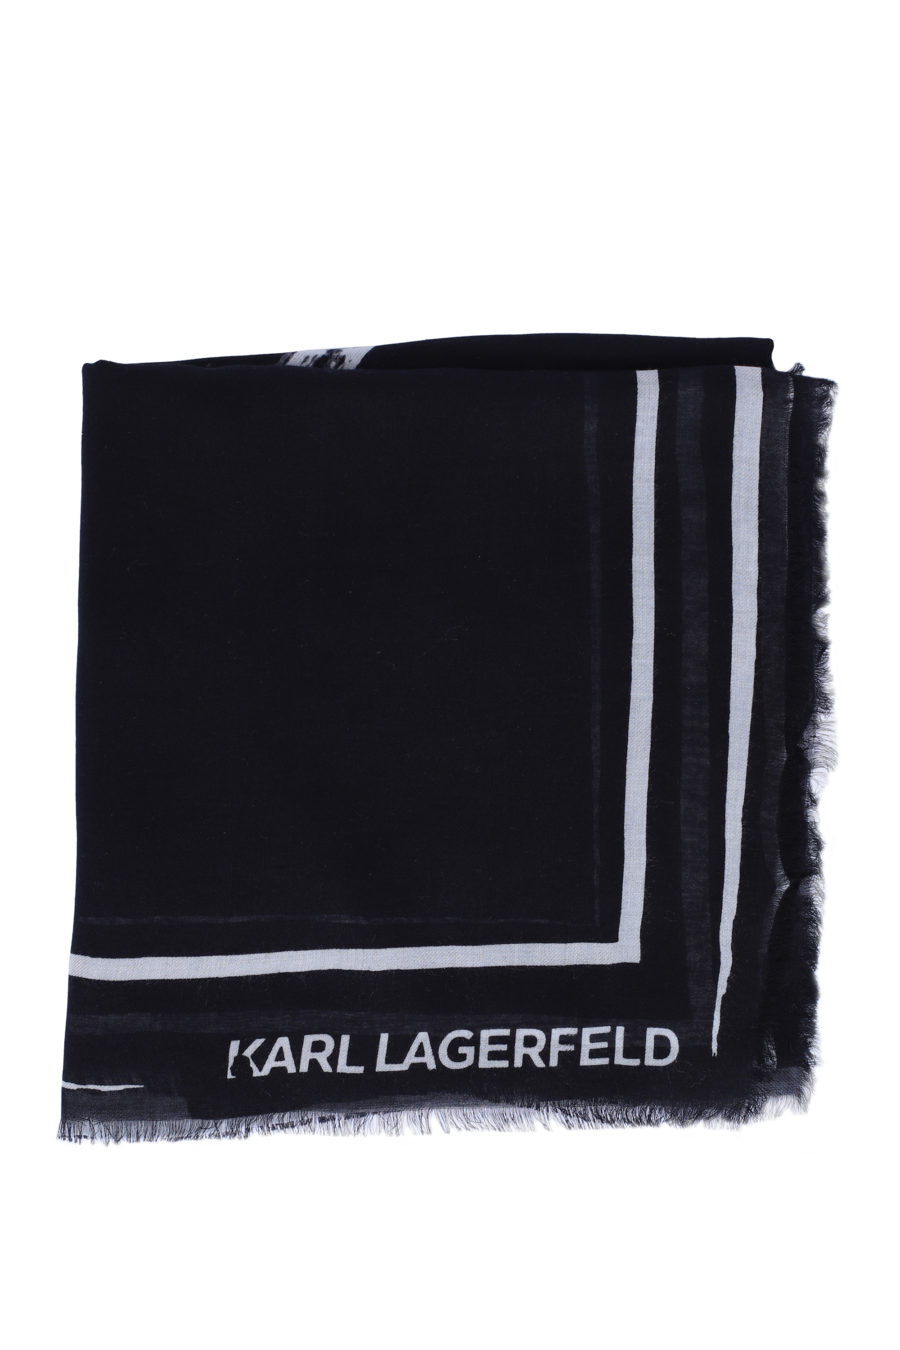 Bufanda negra con logo blanco grande - IMG 9144